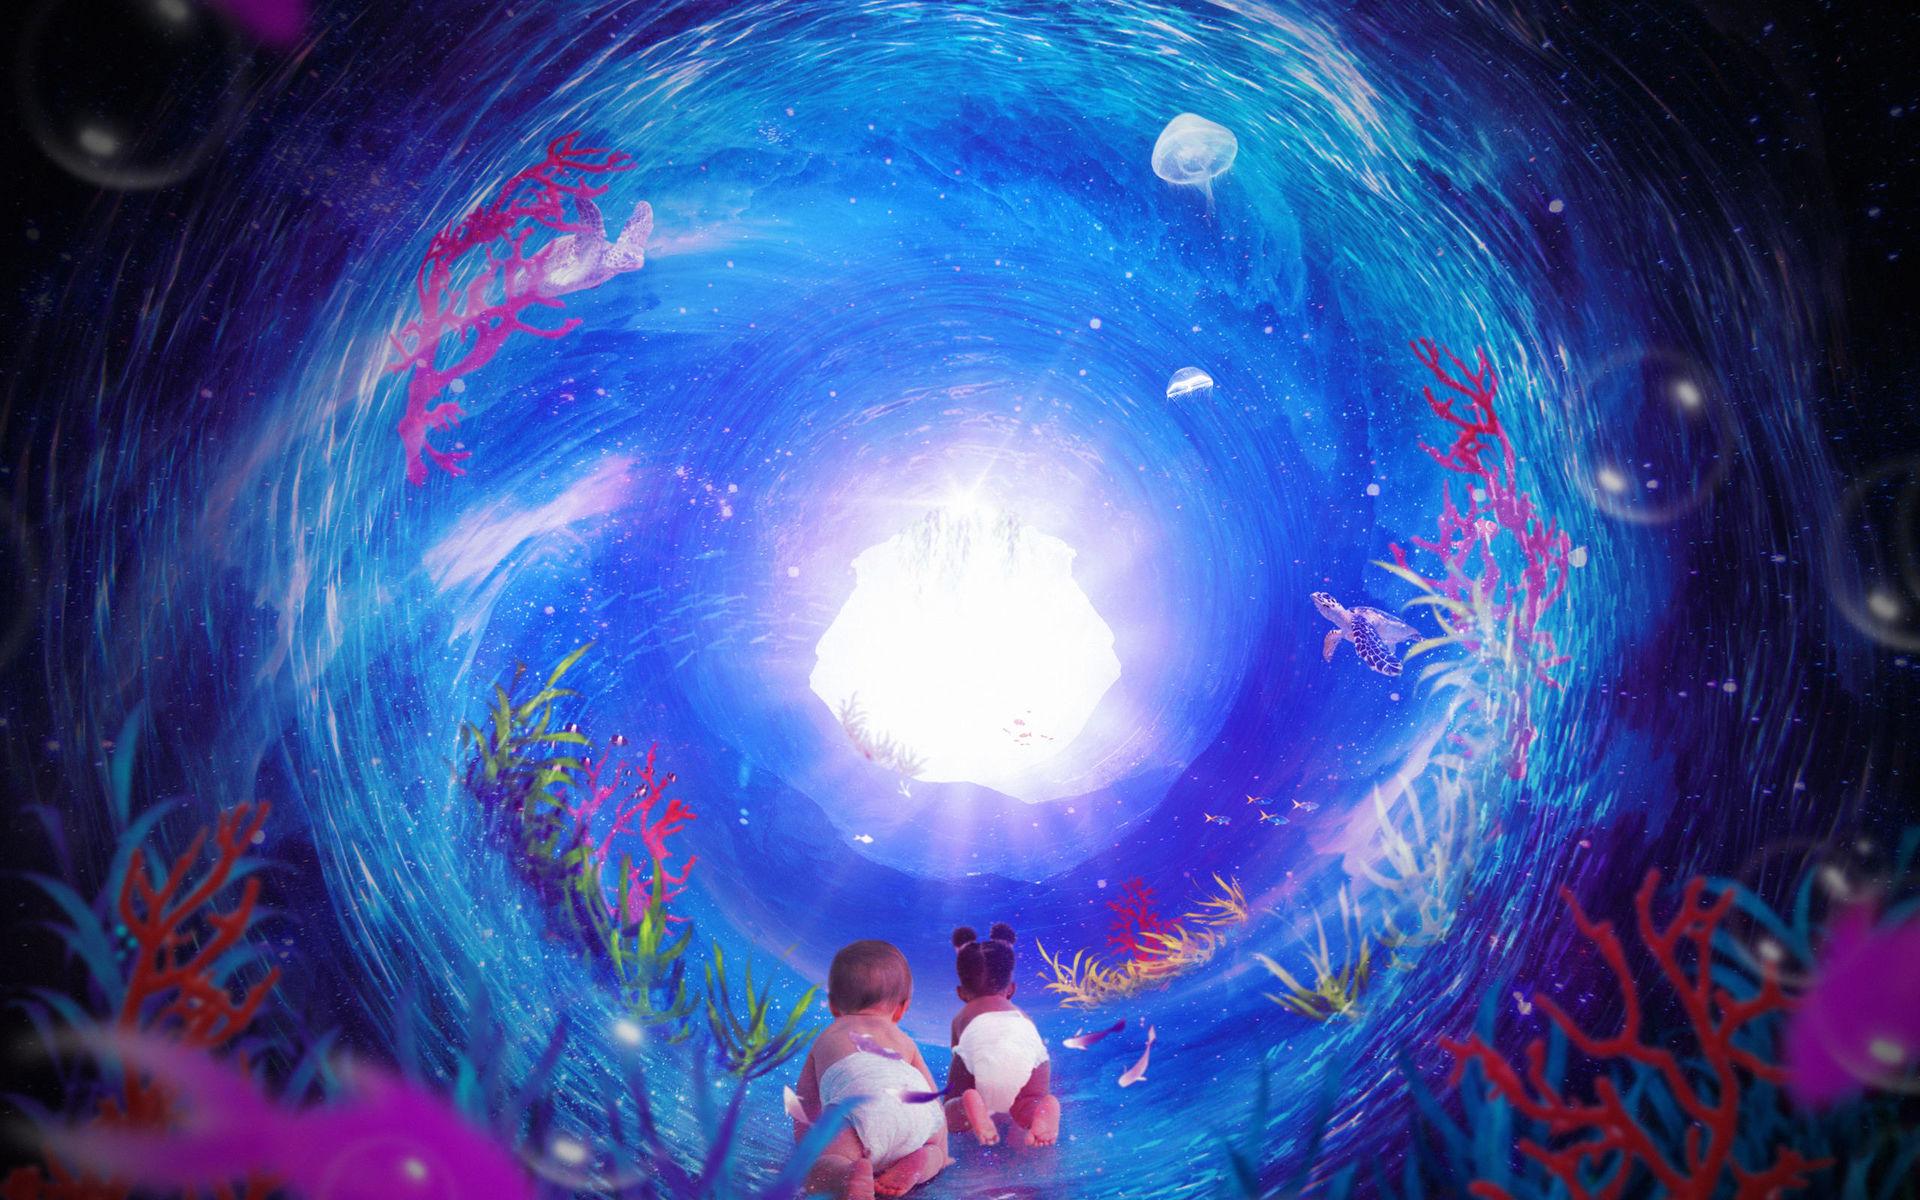 &quot;Den kosmiska havsträdgårdspassagen&quot; är en dansföreställning och installation för bebisar. Den 29 februari kommer den till Regionteater Väst. 